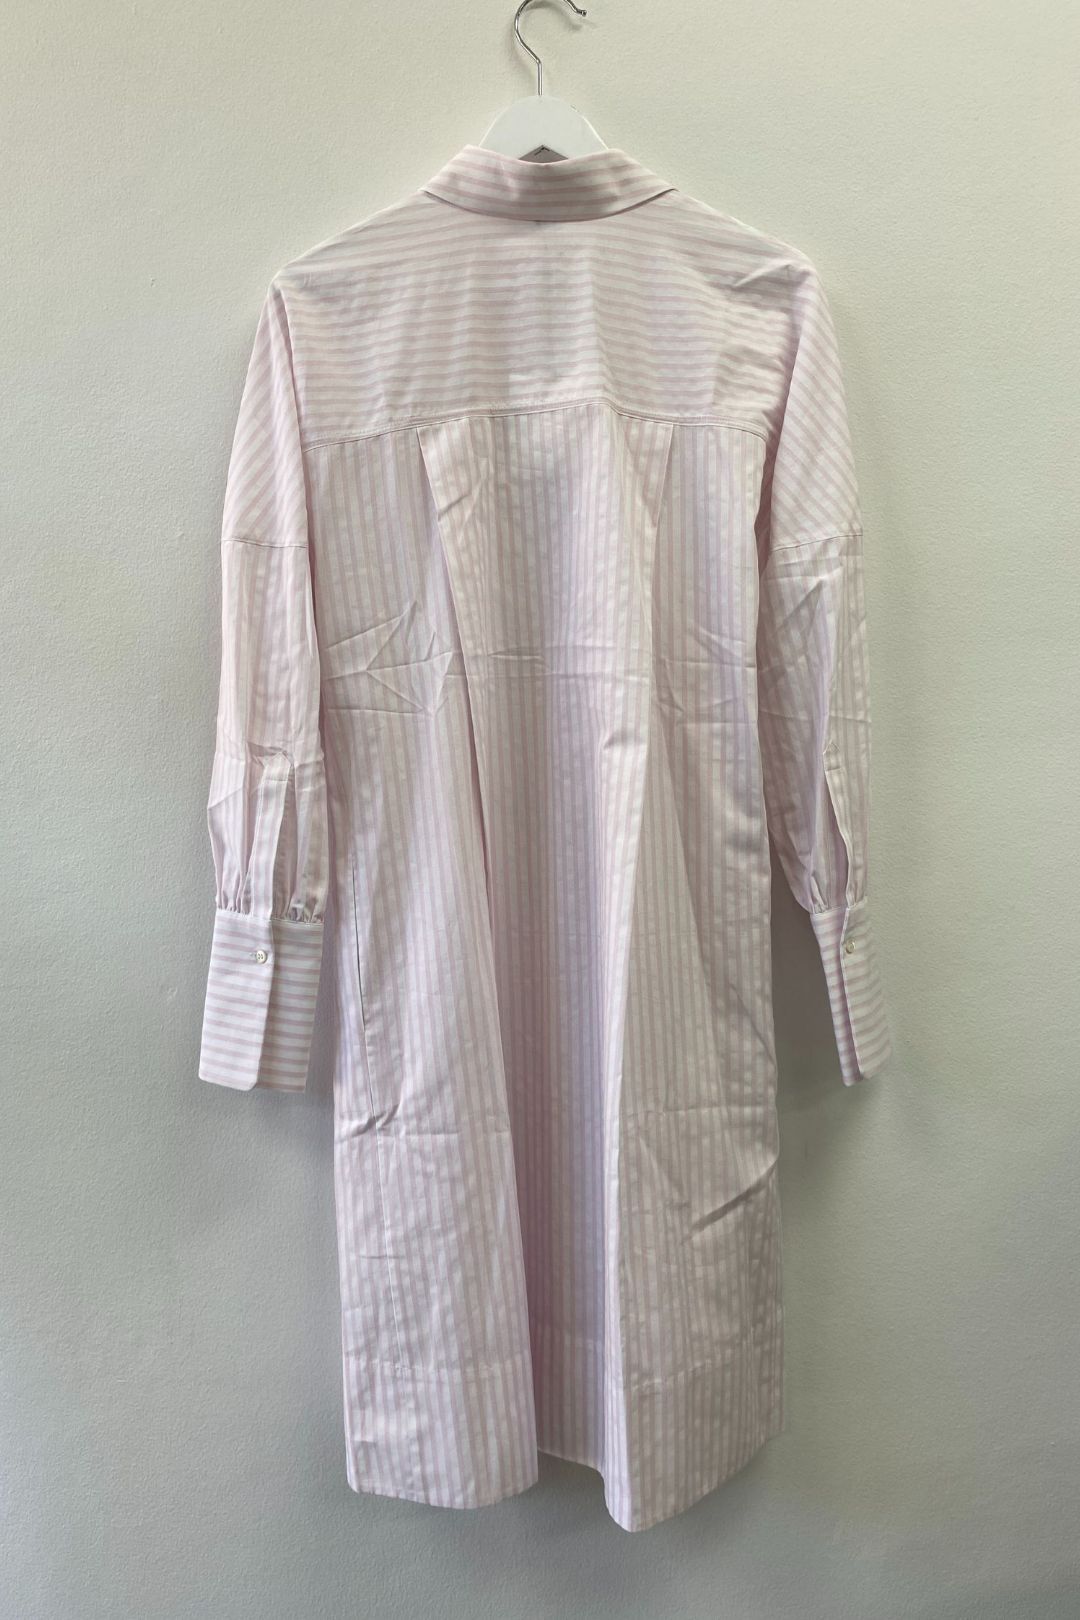 Victoria Beckham - Striped Belted Shirt Dress